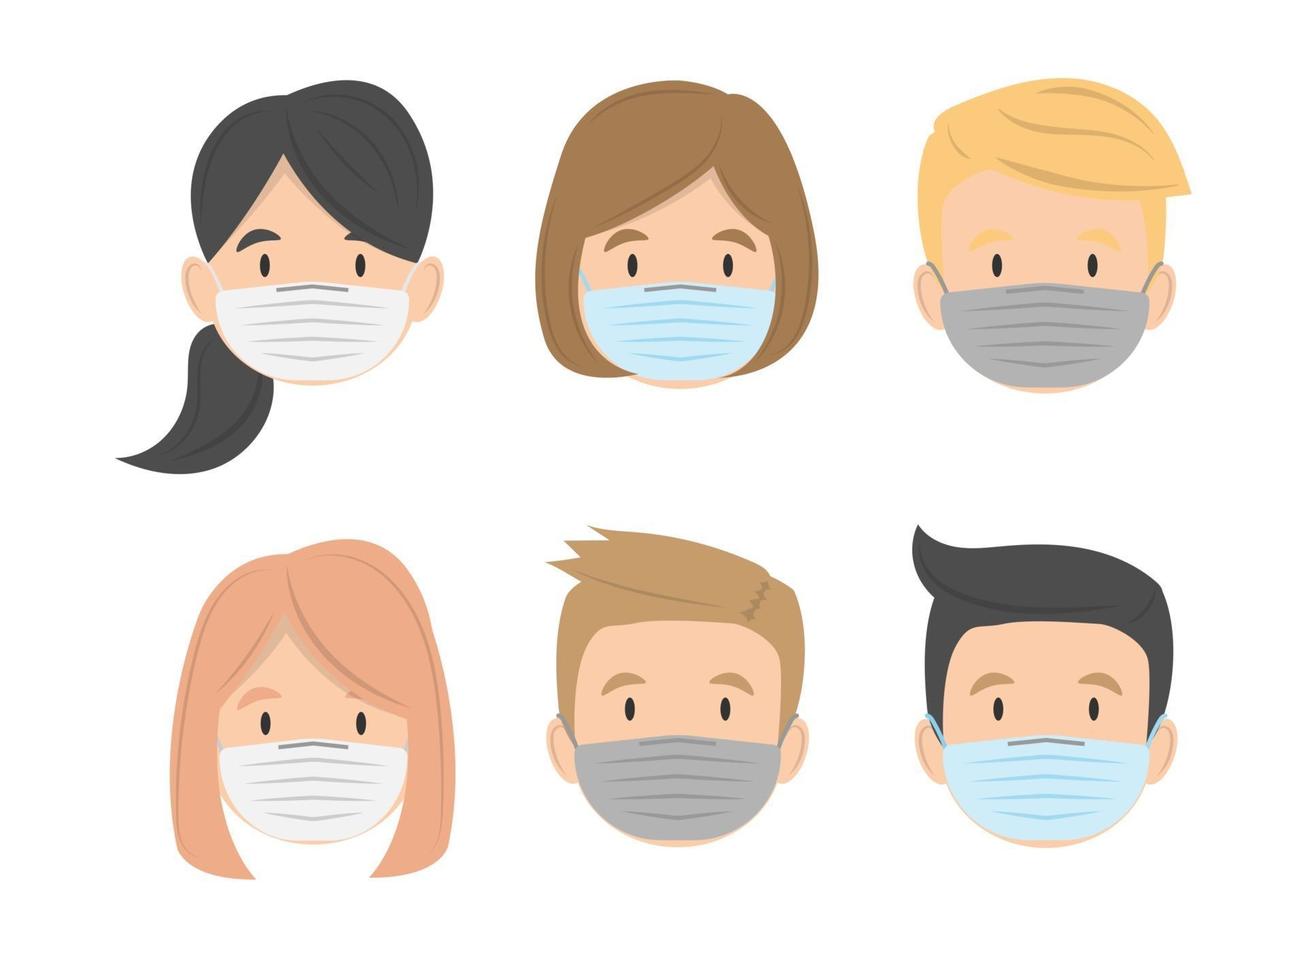 groep kinderen worden geconfronteerd met het dragen van medisch masker plat ontwerp, vectorillustratie vector